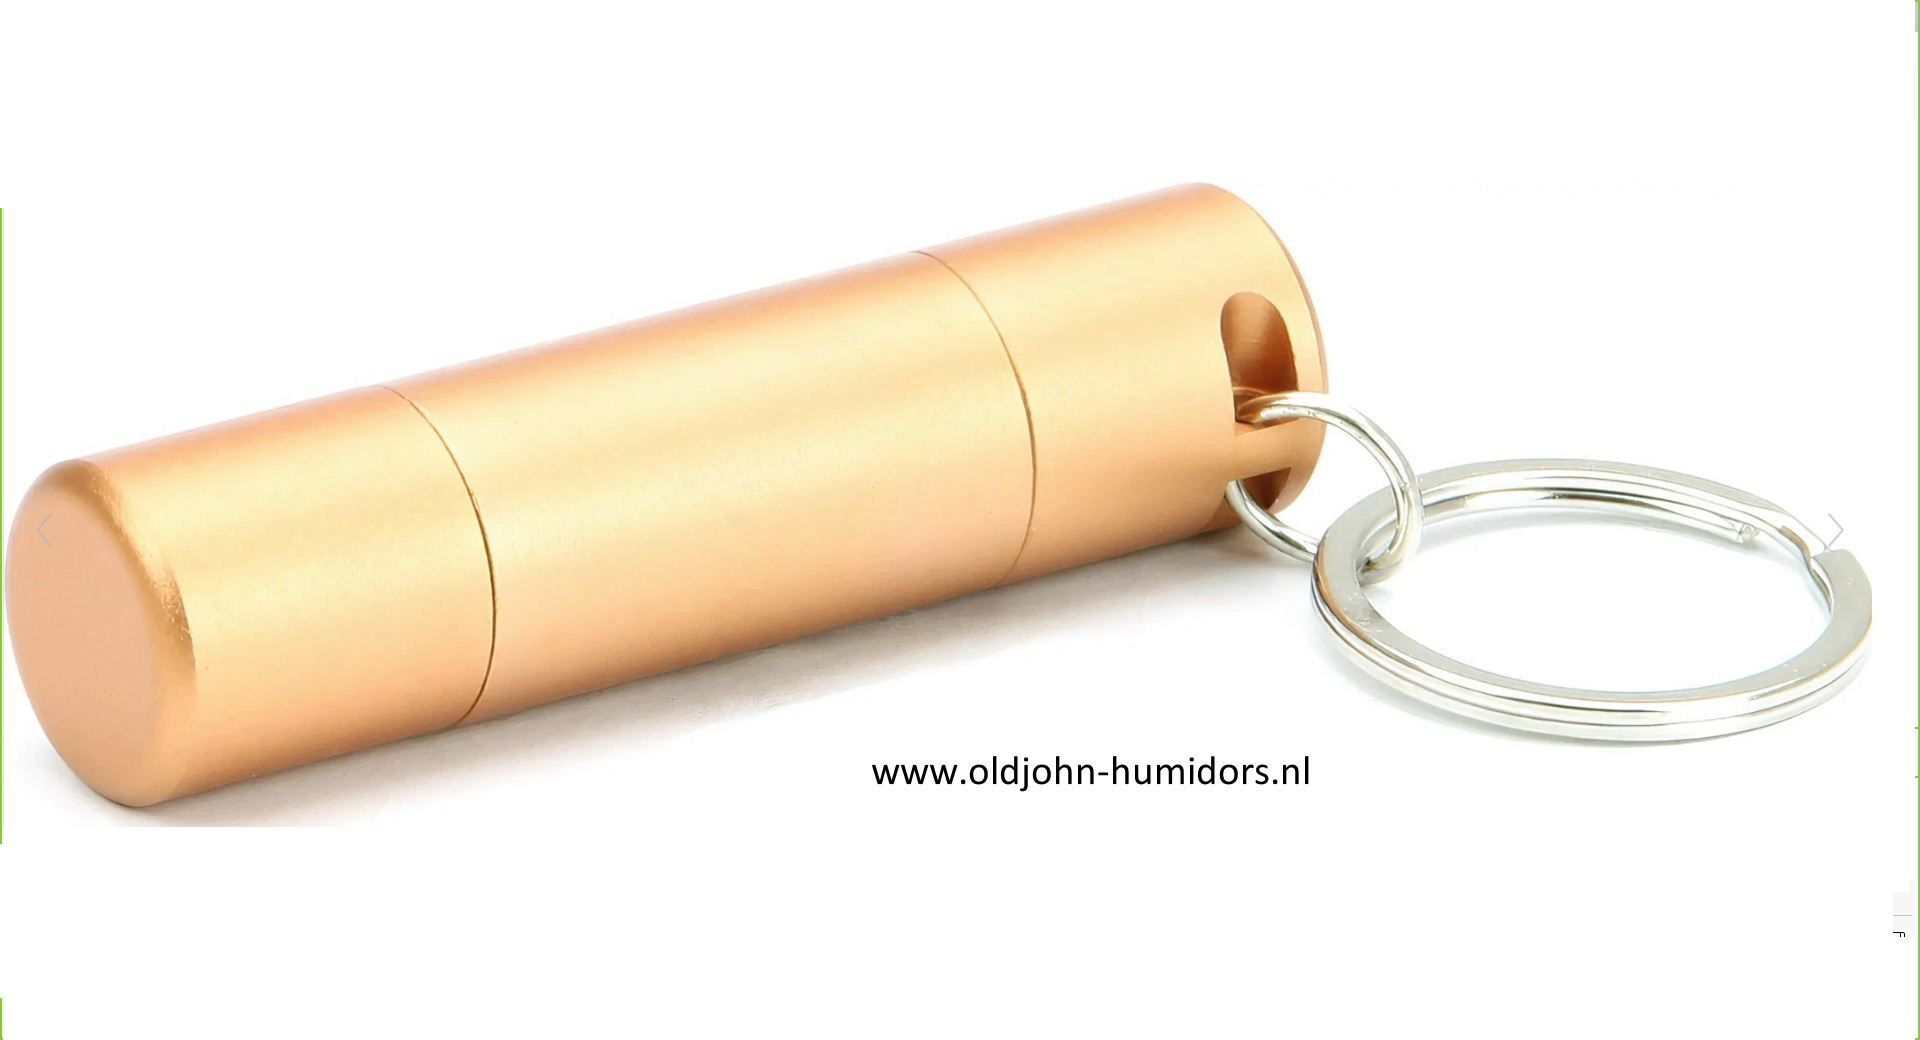 skn33 Nieuwe professionele top merk sigarenboor van ADORINI ® - chirurgisch staal - dubbel mes, vlijmscherp - geschenkverpakking - leverbaar uit voorraad , verkoop via oldjohn-humidors.nl